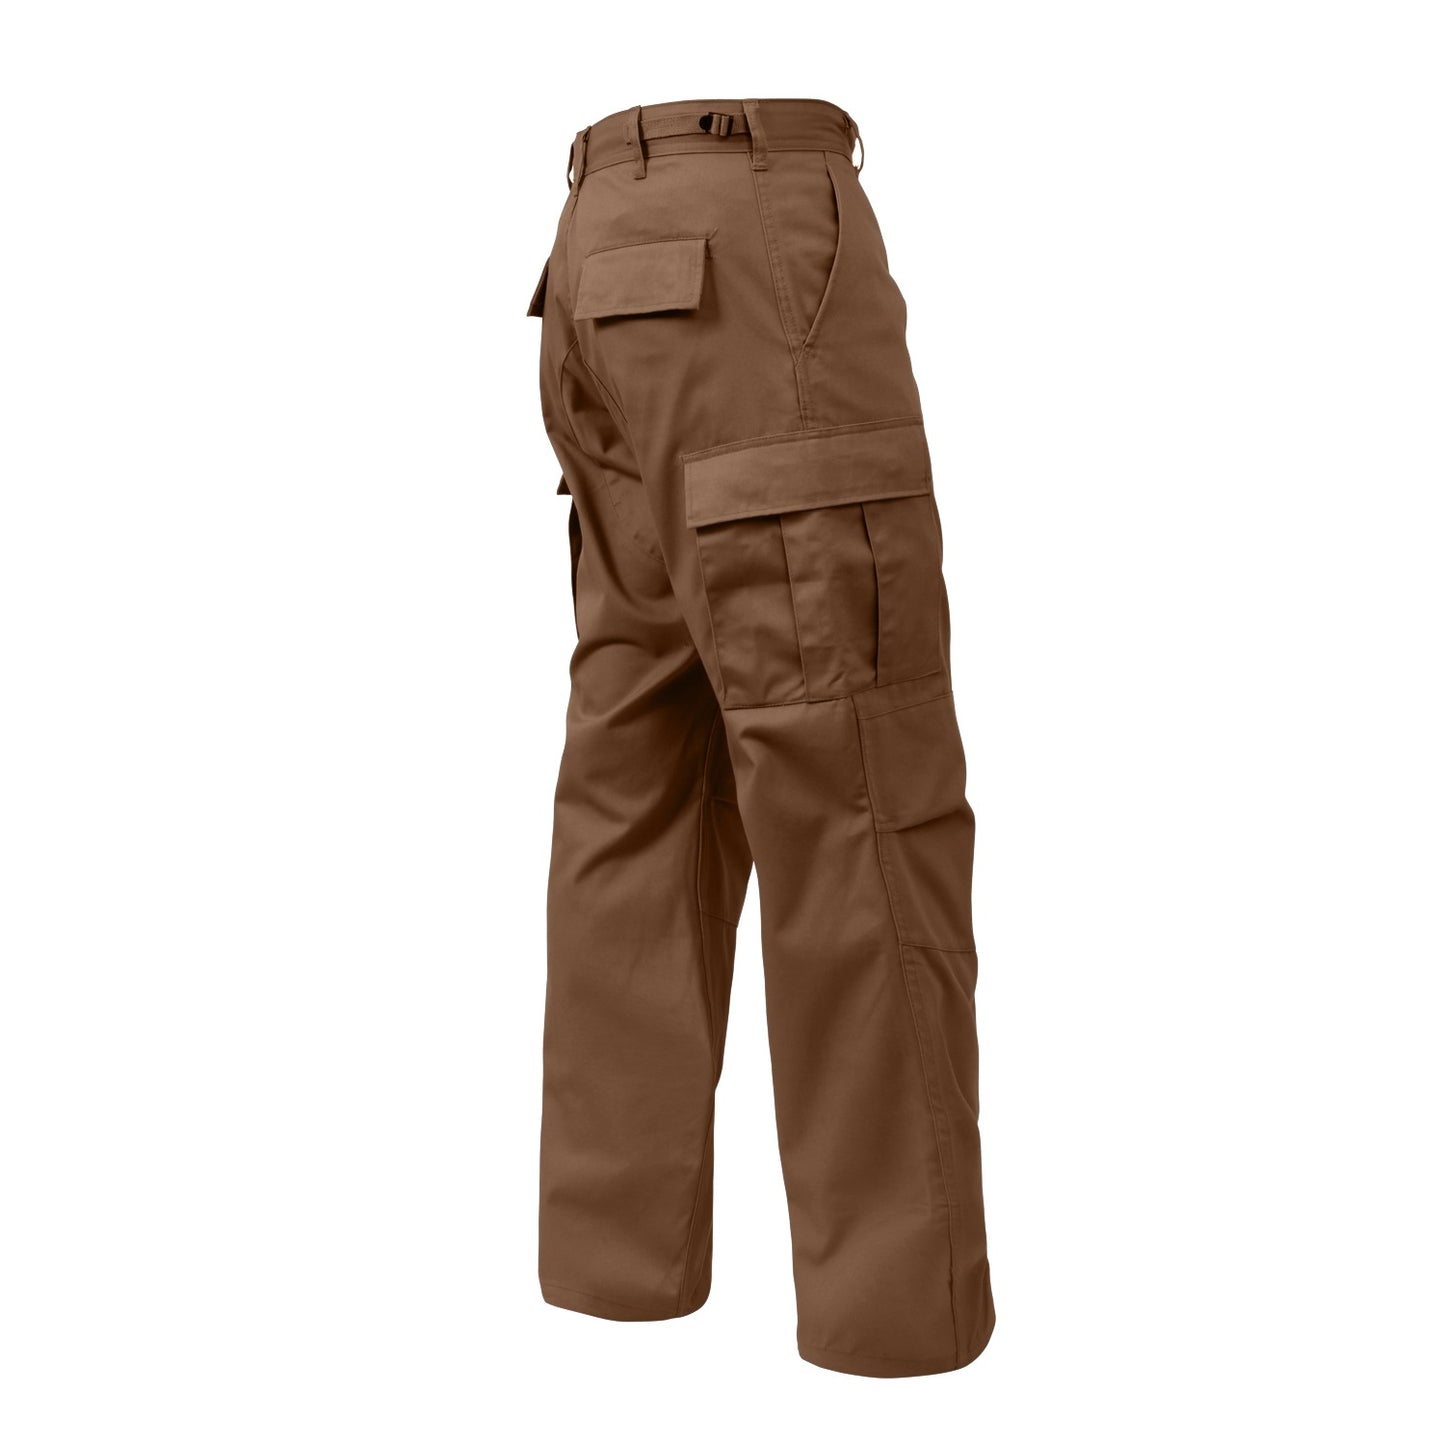 8579 - Tactical BDU Pants